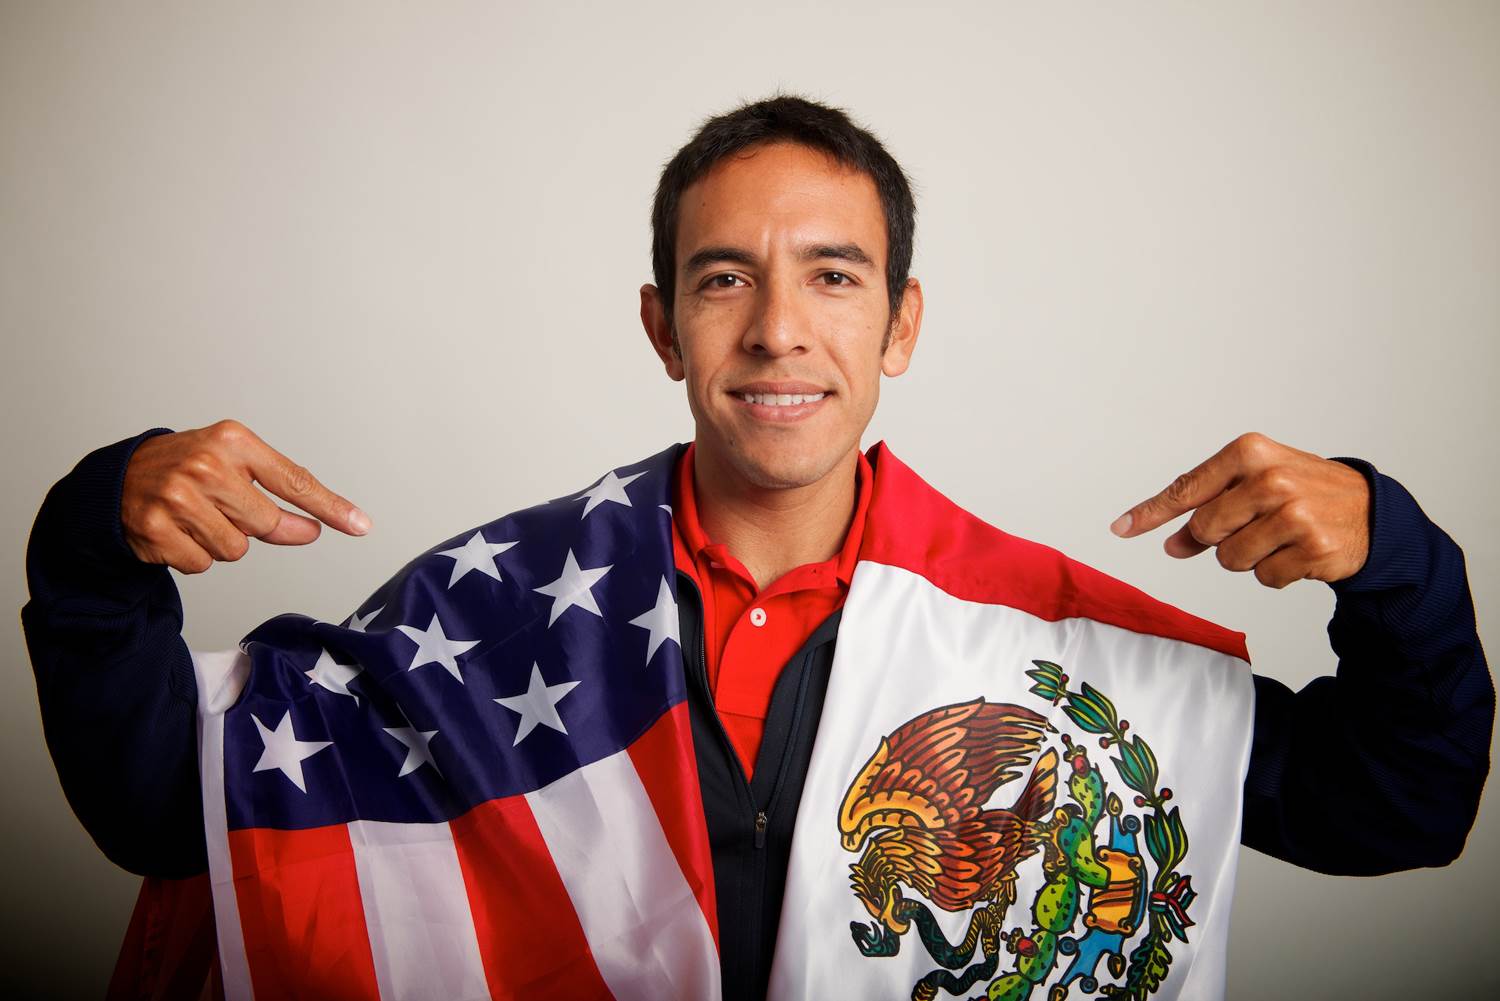 Hombre con la bandera de México y de Estados Unidos, indicando ambas nacionalidades